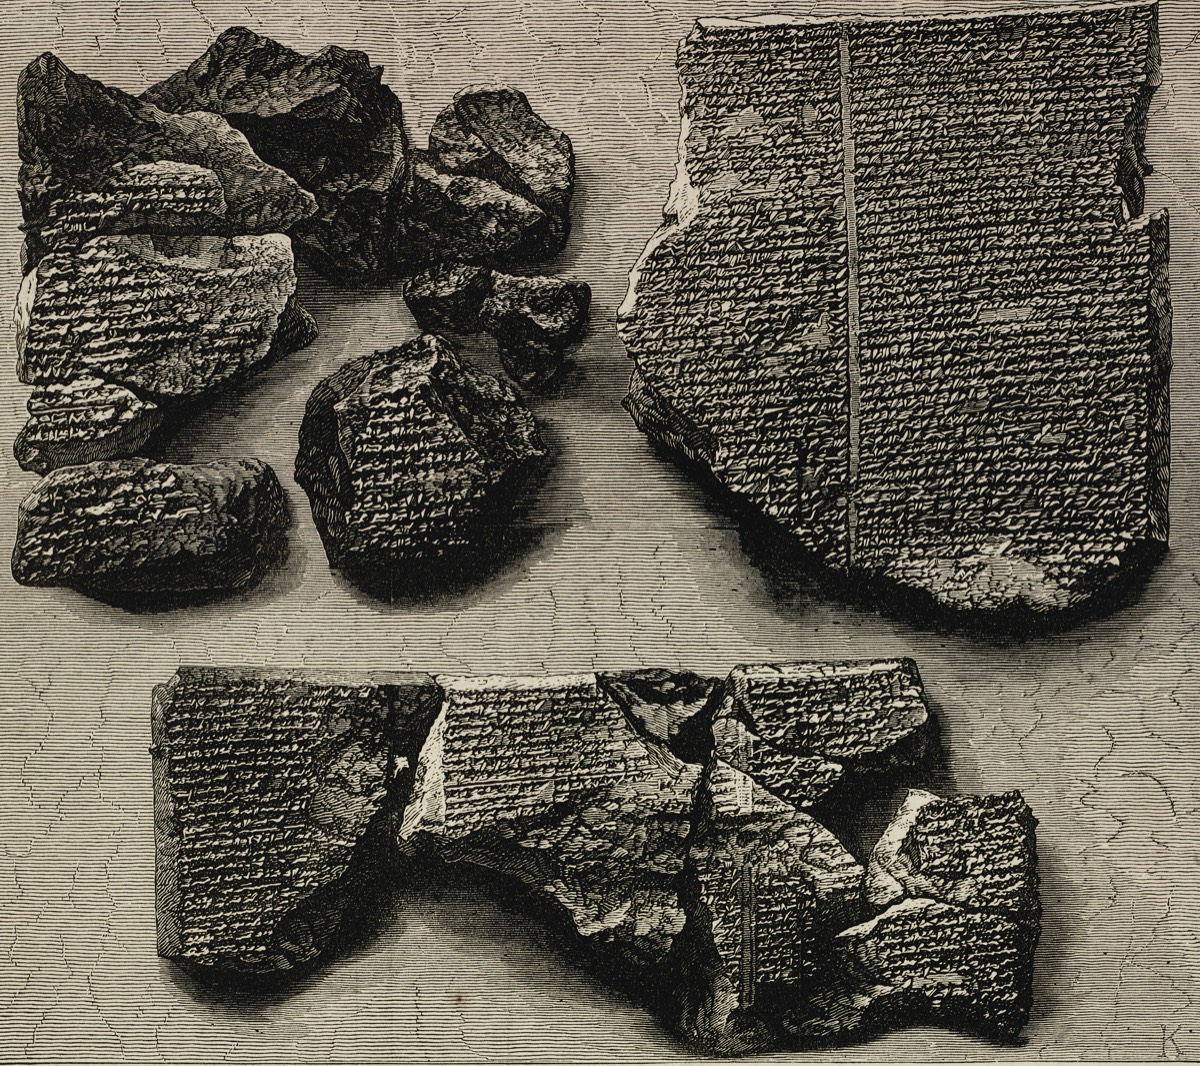 رمزگشایی از لوح باستانی ۲ هزار ساله گیلگمش با استفاده از هوش مصنوعی 